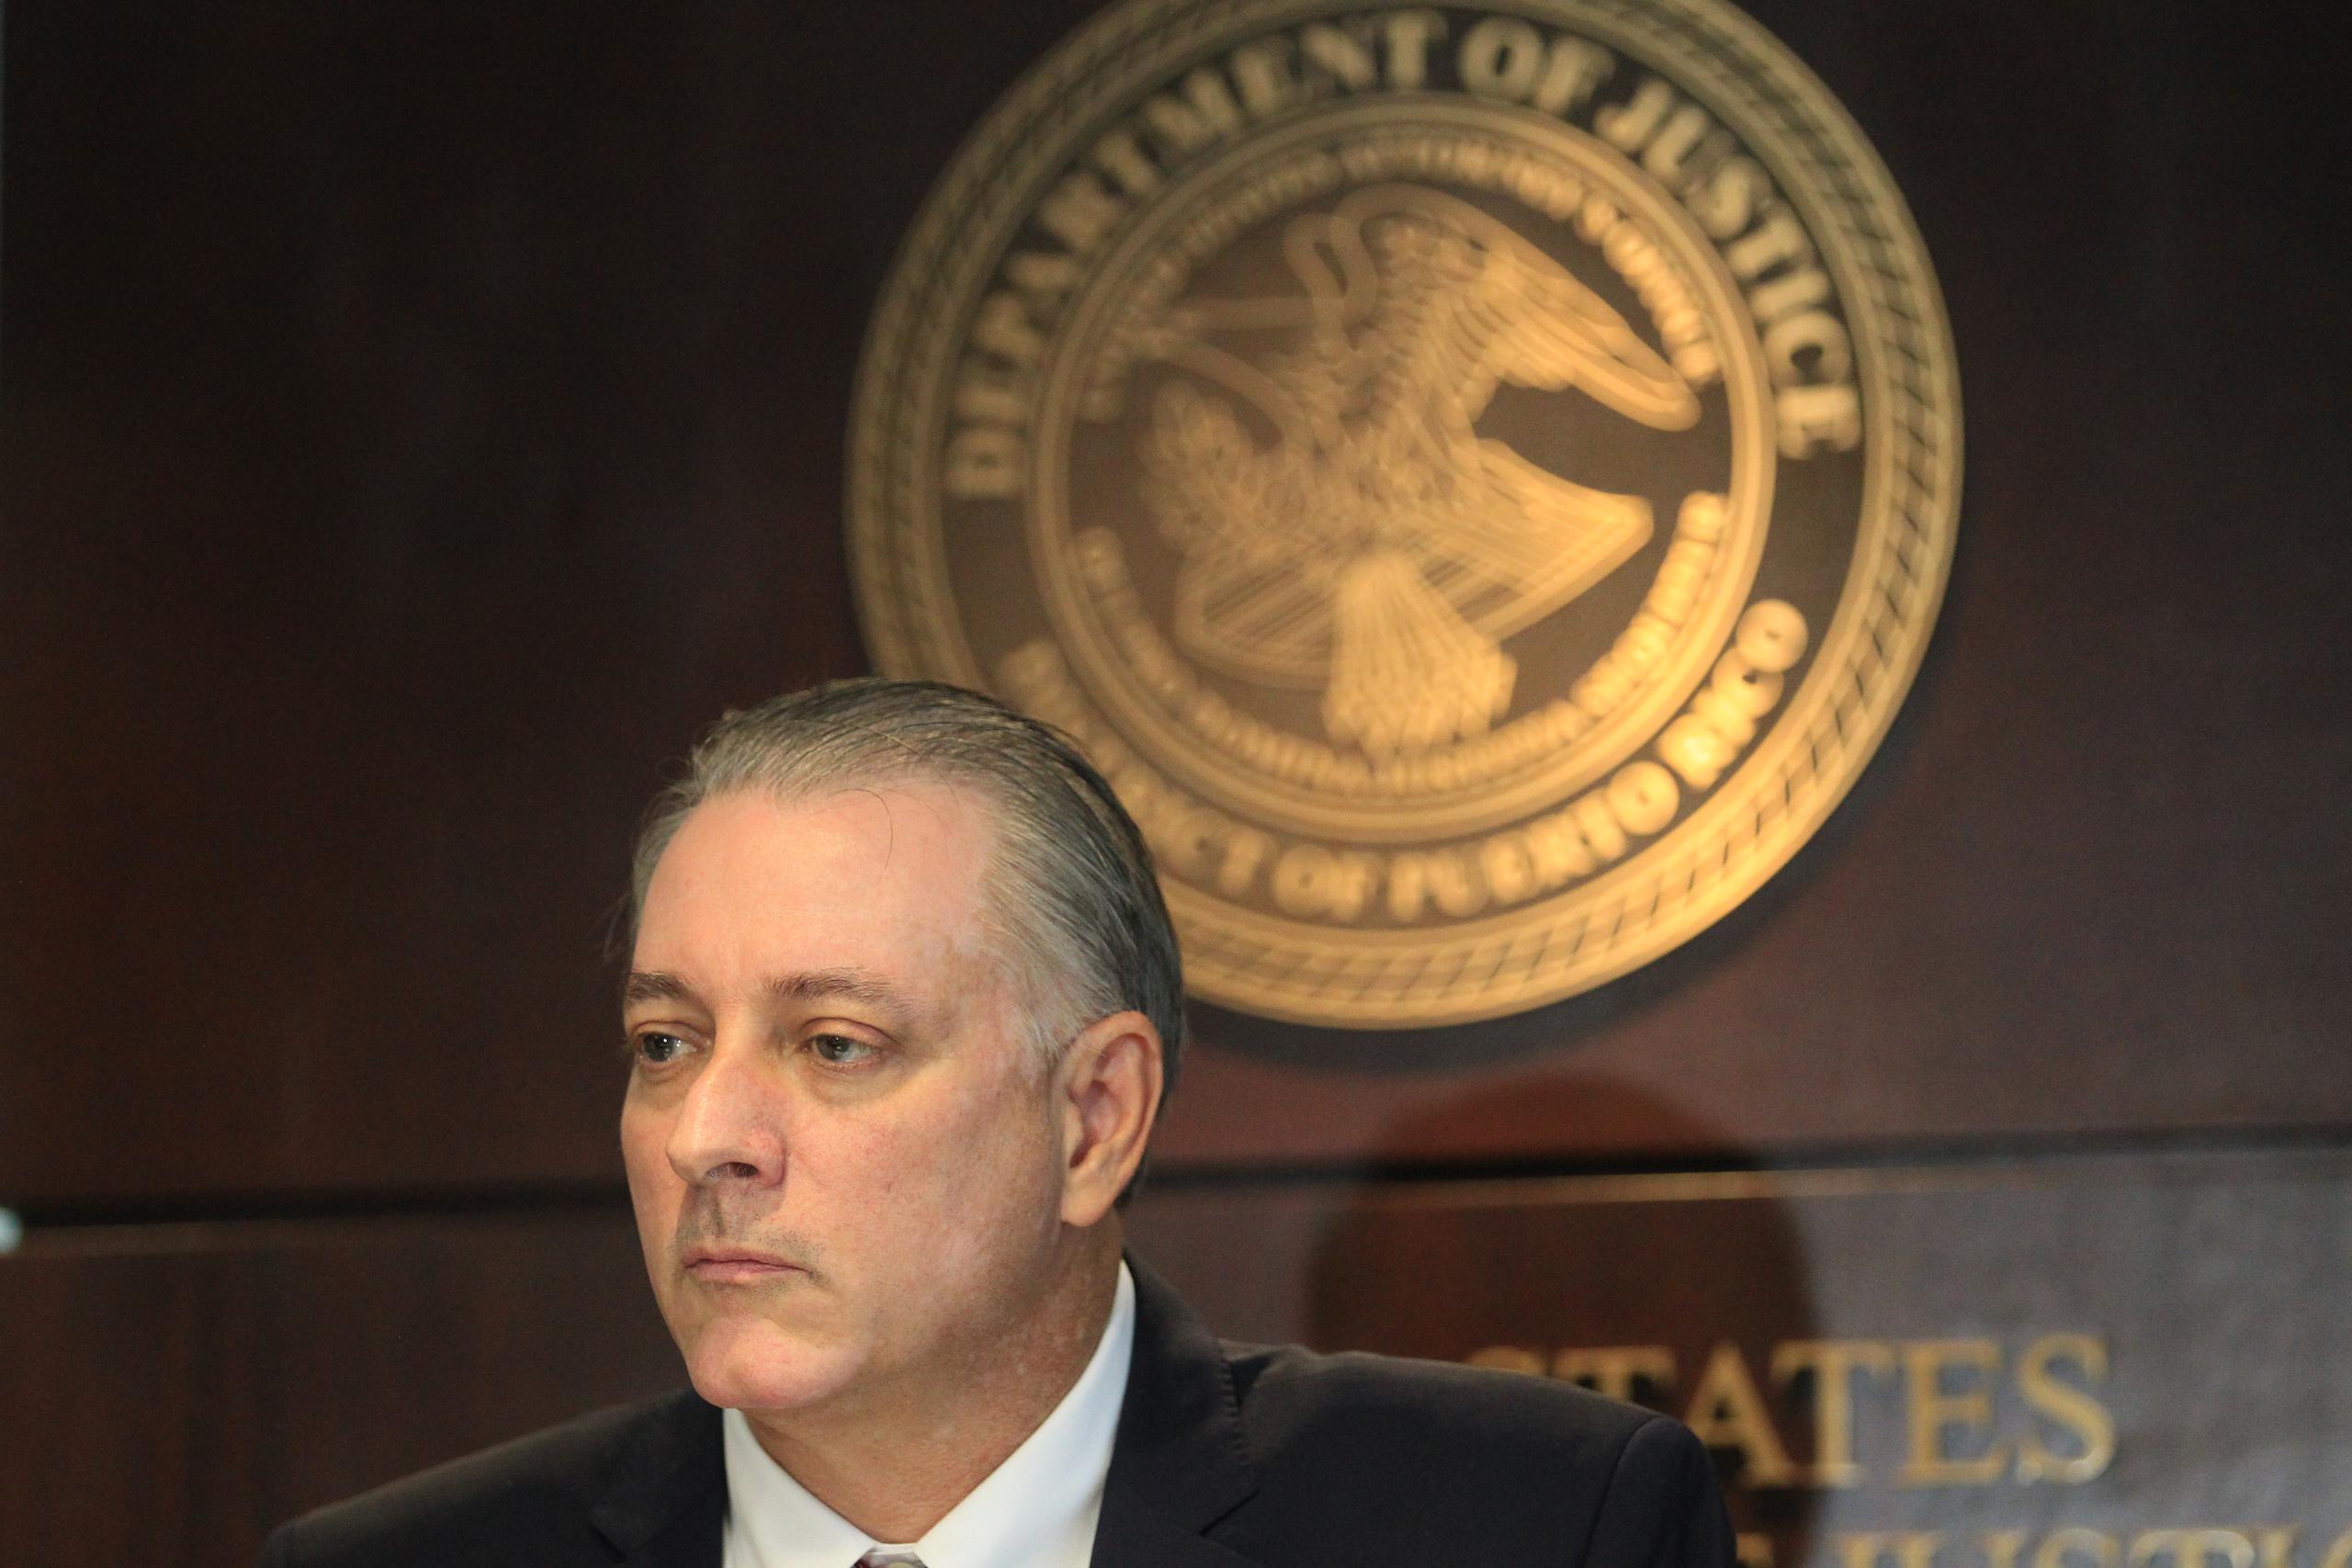 "La Oficina del Fiscal Federal y sus colegas continuarán persiguiendo a los narcotraficantes y buscando justicia para nuestras comunidades”, señaló Stephen Muldrow, jefe de la Fiscalía Federal en Puerto Rico.